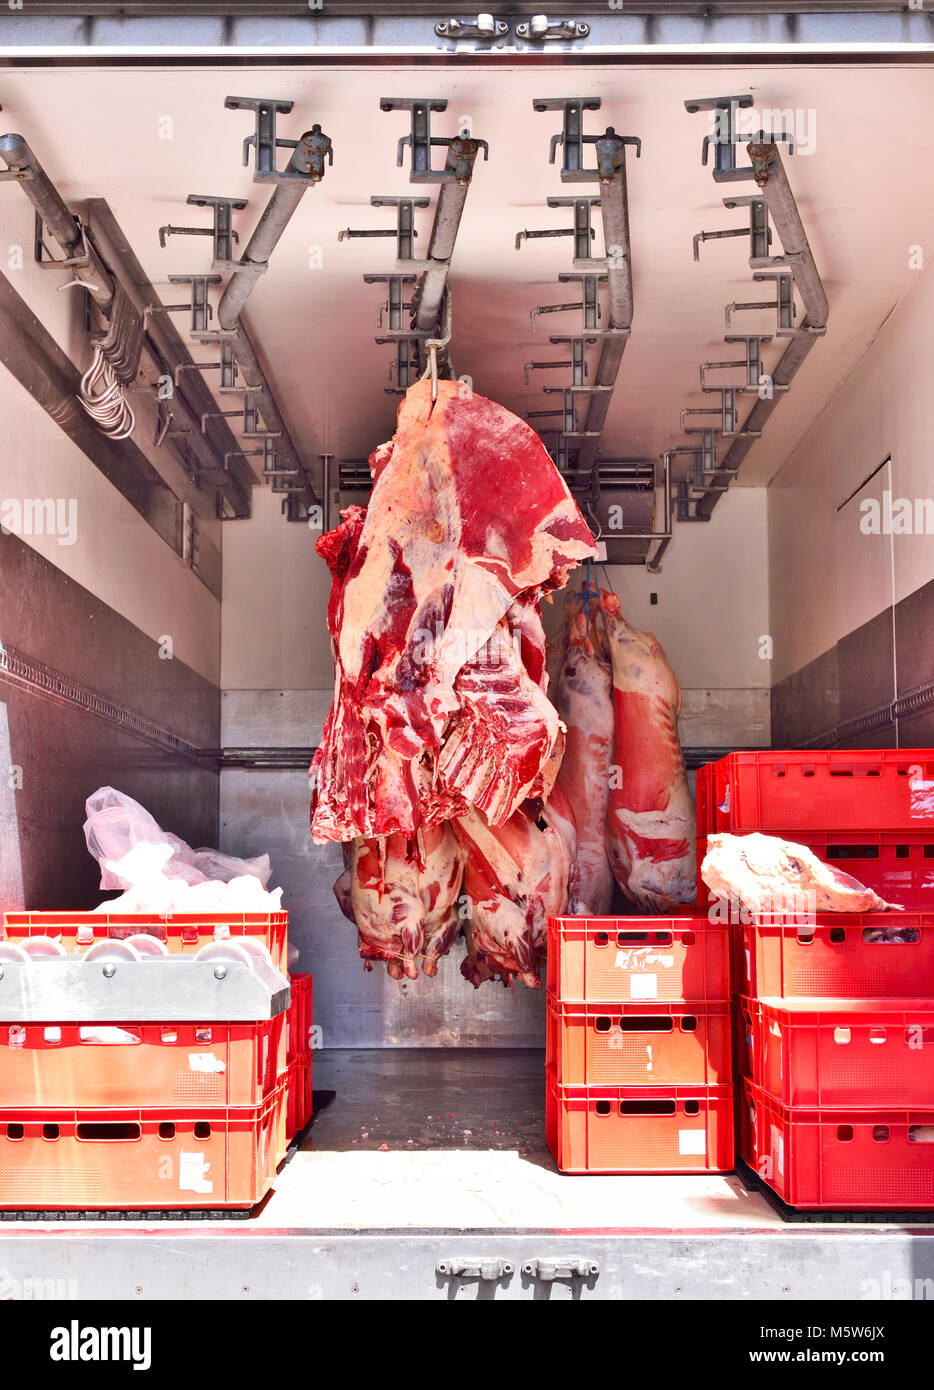 Essen Lieferung von rohem Rind- oder Schweinefleisch, Rindfleisch in einer Kühlung Truck. Frisches dunkles Fleisch, Buttrige oder Schlachthaus Thema. Fleisch Transporter, Lebensmittelindustrie. Stockfoto